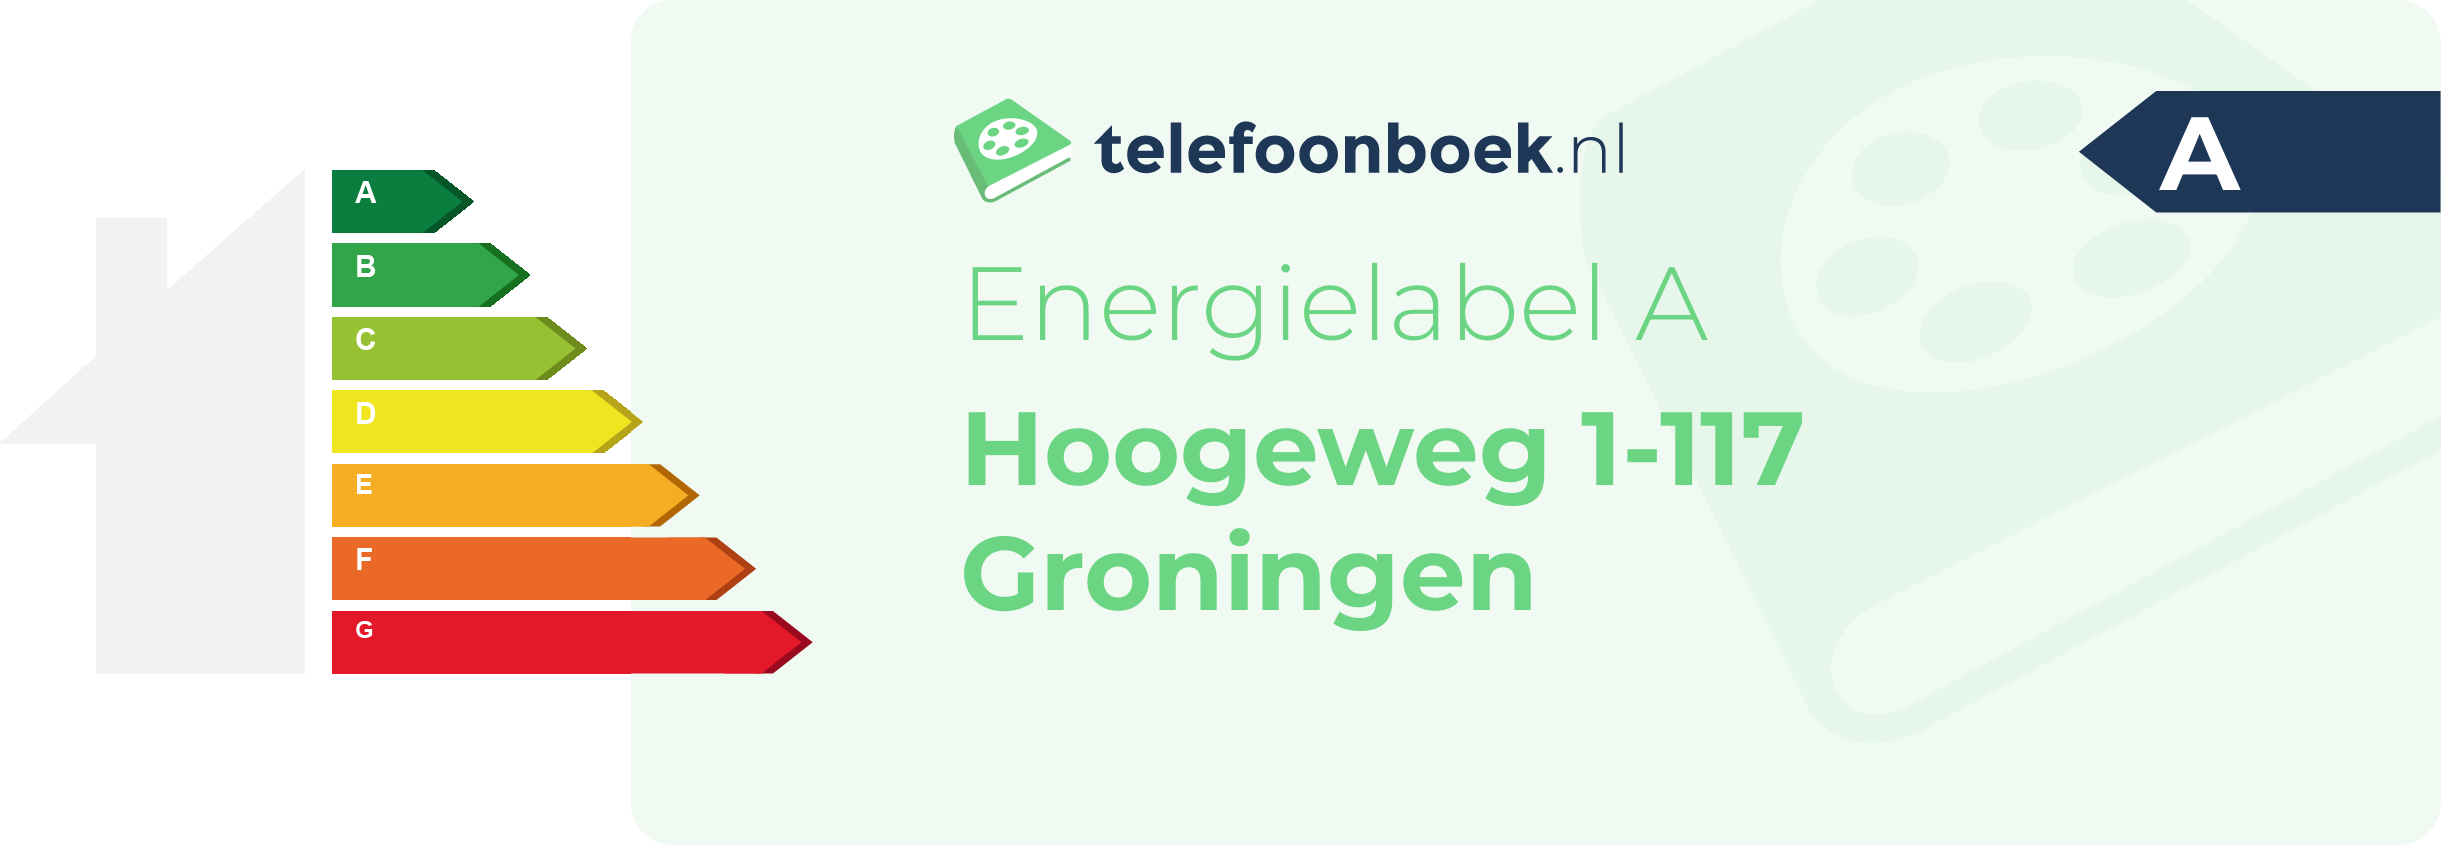 Energielabel Hoogeweg 1-117 Groningen